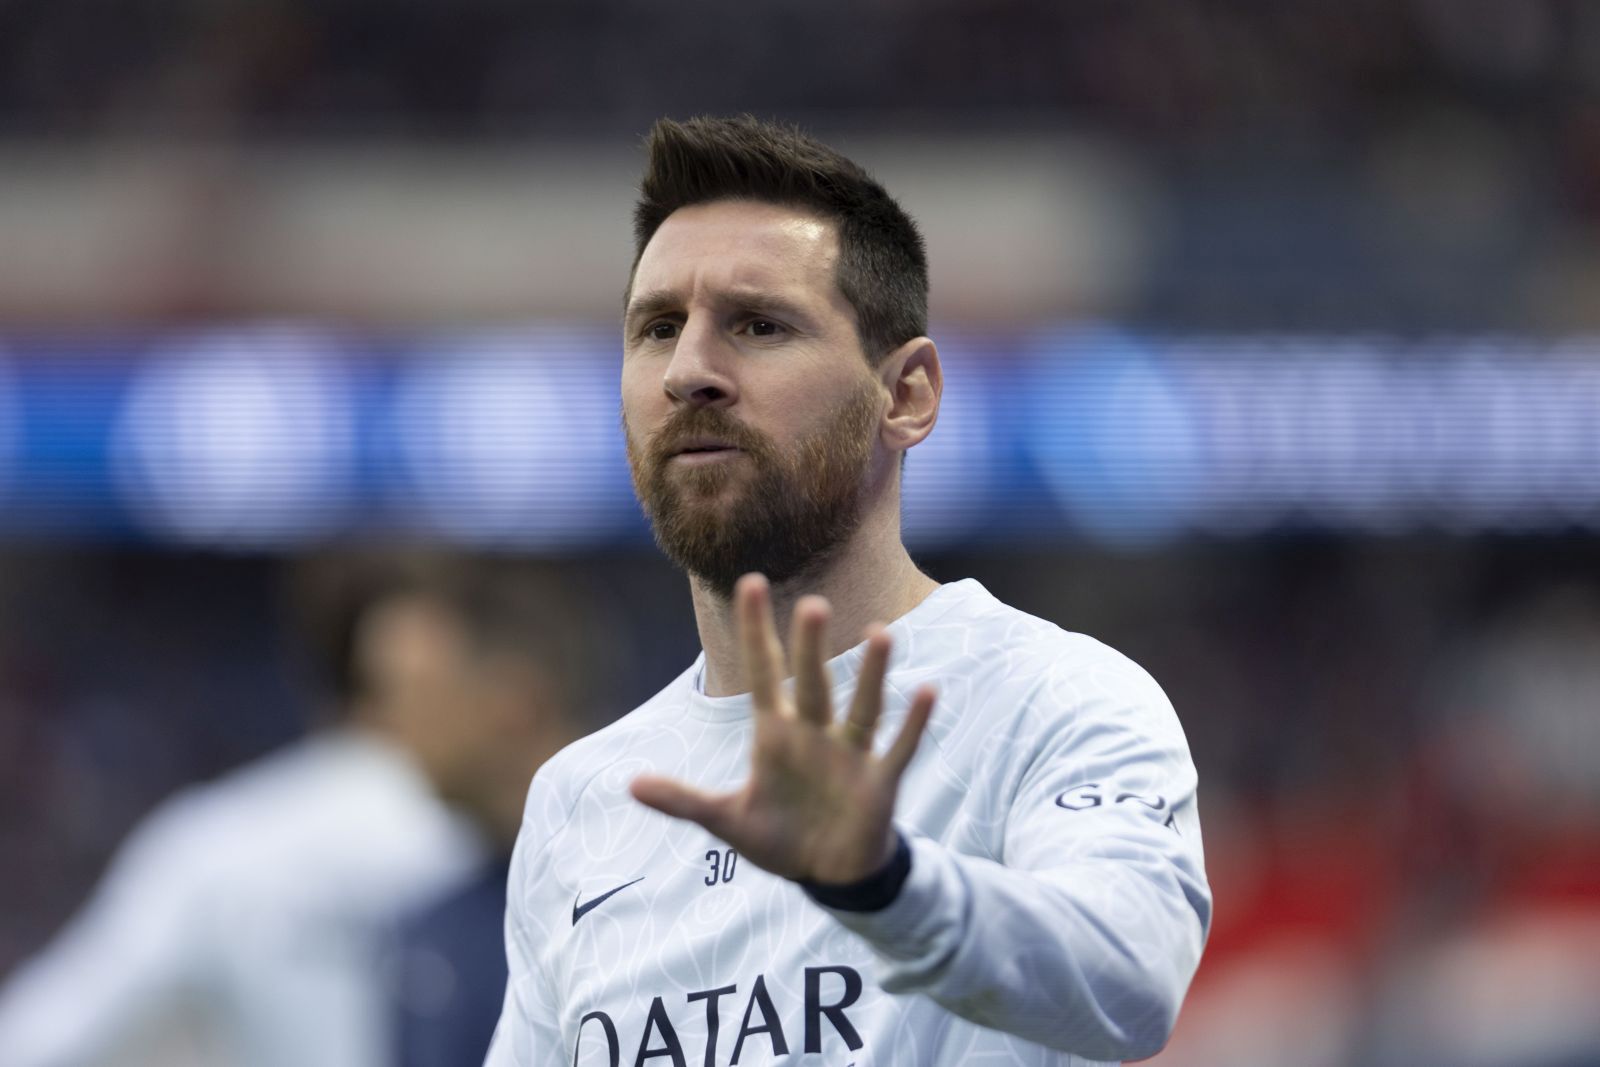 Tak Messi świętował mistrzostwo Barcelony